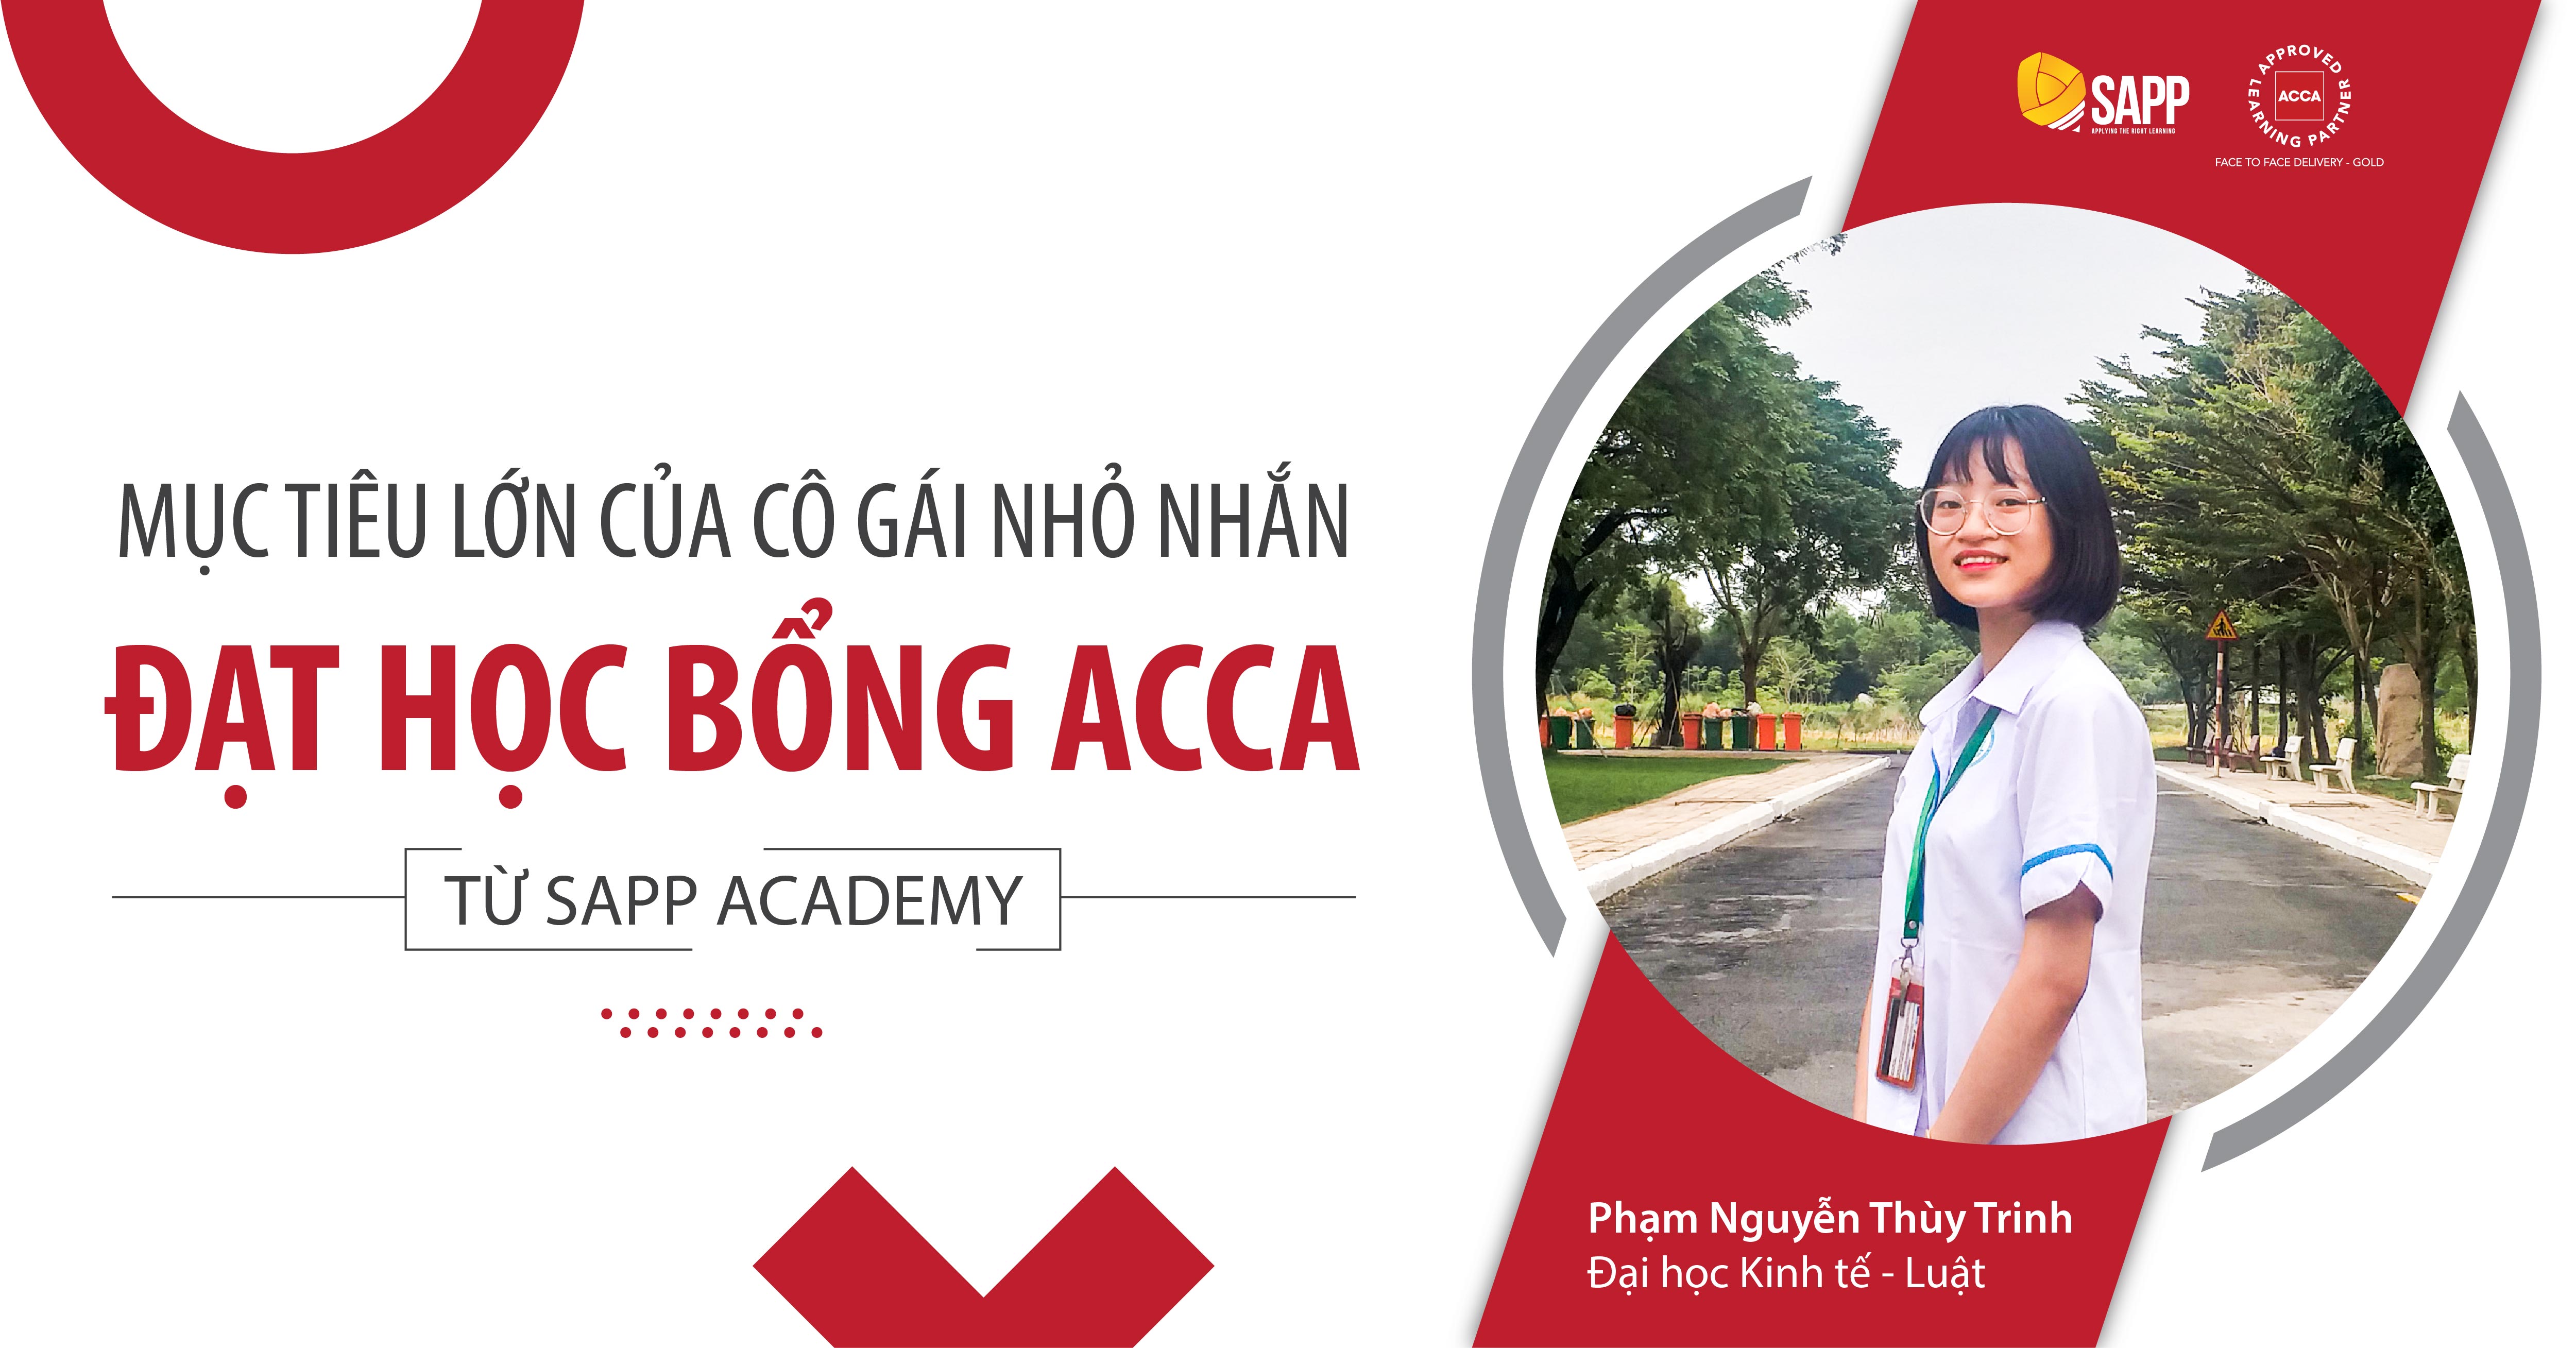 Mục tiêu lớn của của cô gái nhỏ nhắn đạt học bổng ACCA 100% của SAPP Academy